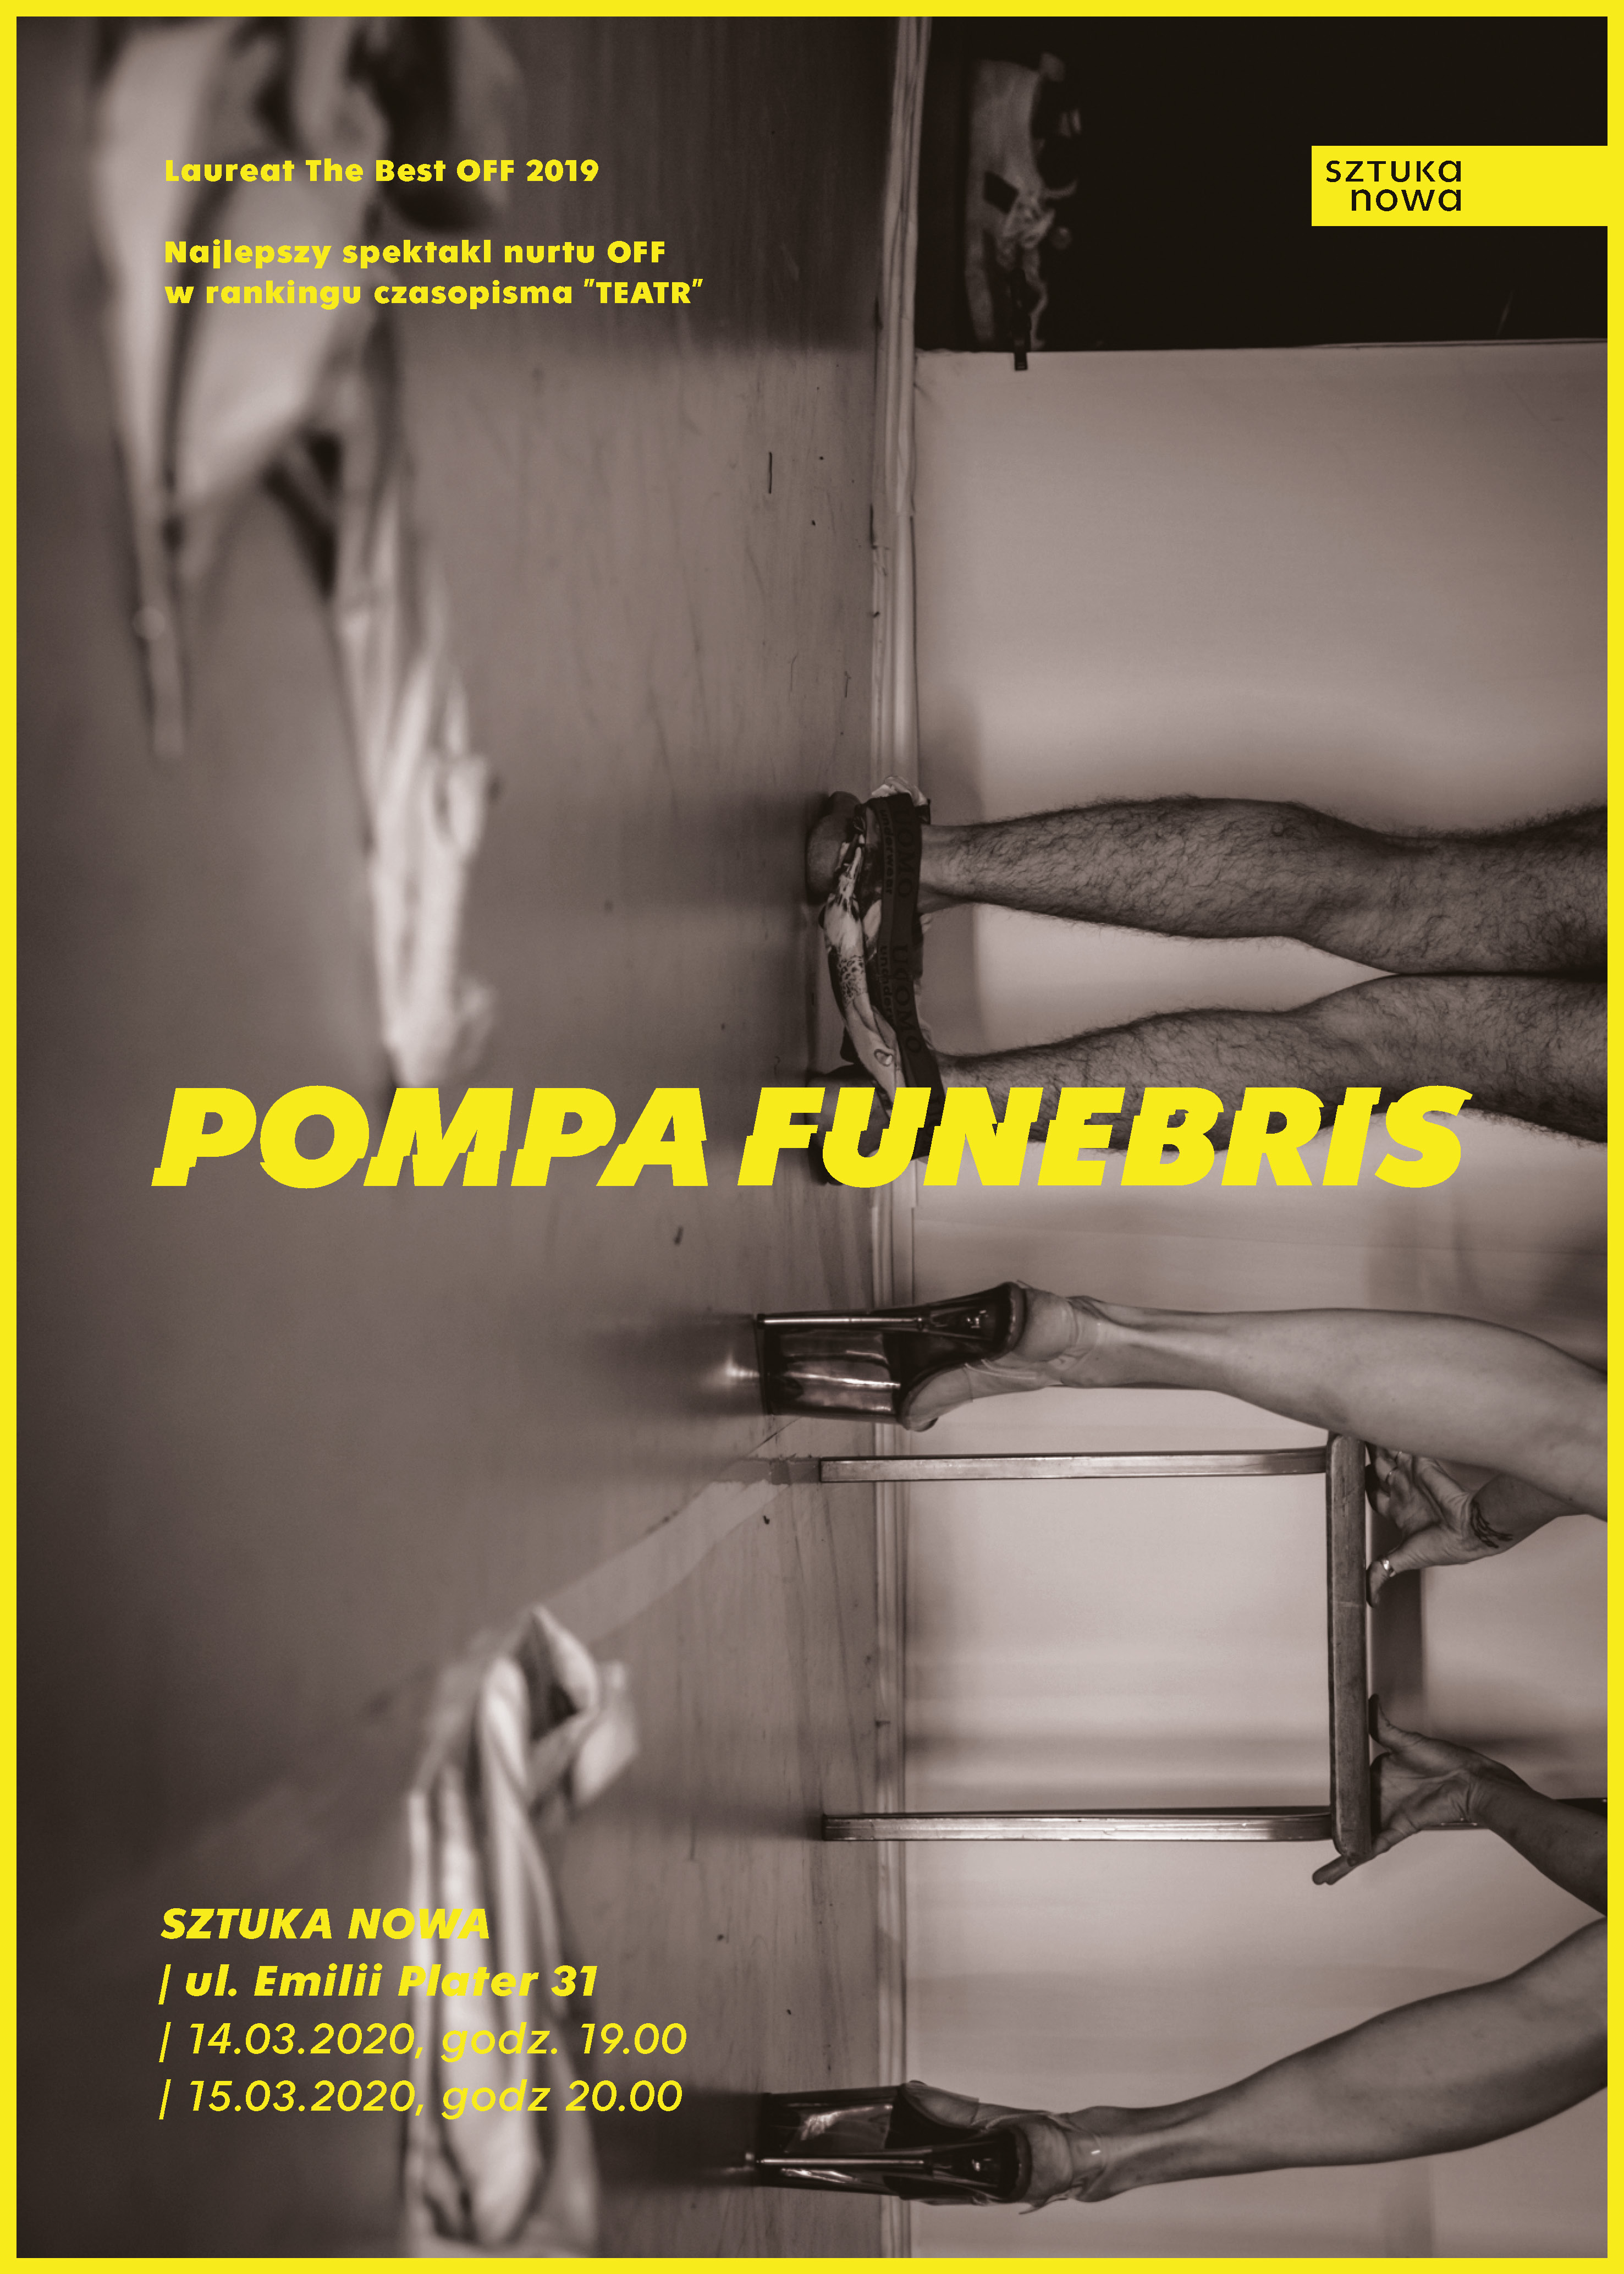 POMPA FUNEBRIS, Sztuka Nowa, Warszawa 2020 (zlecenie)